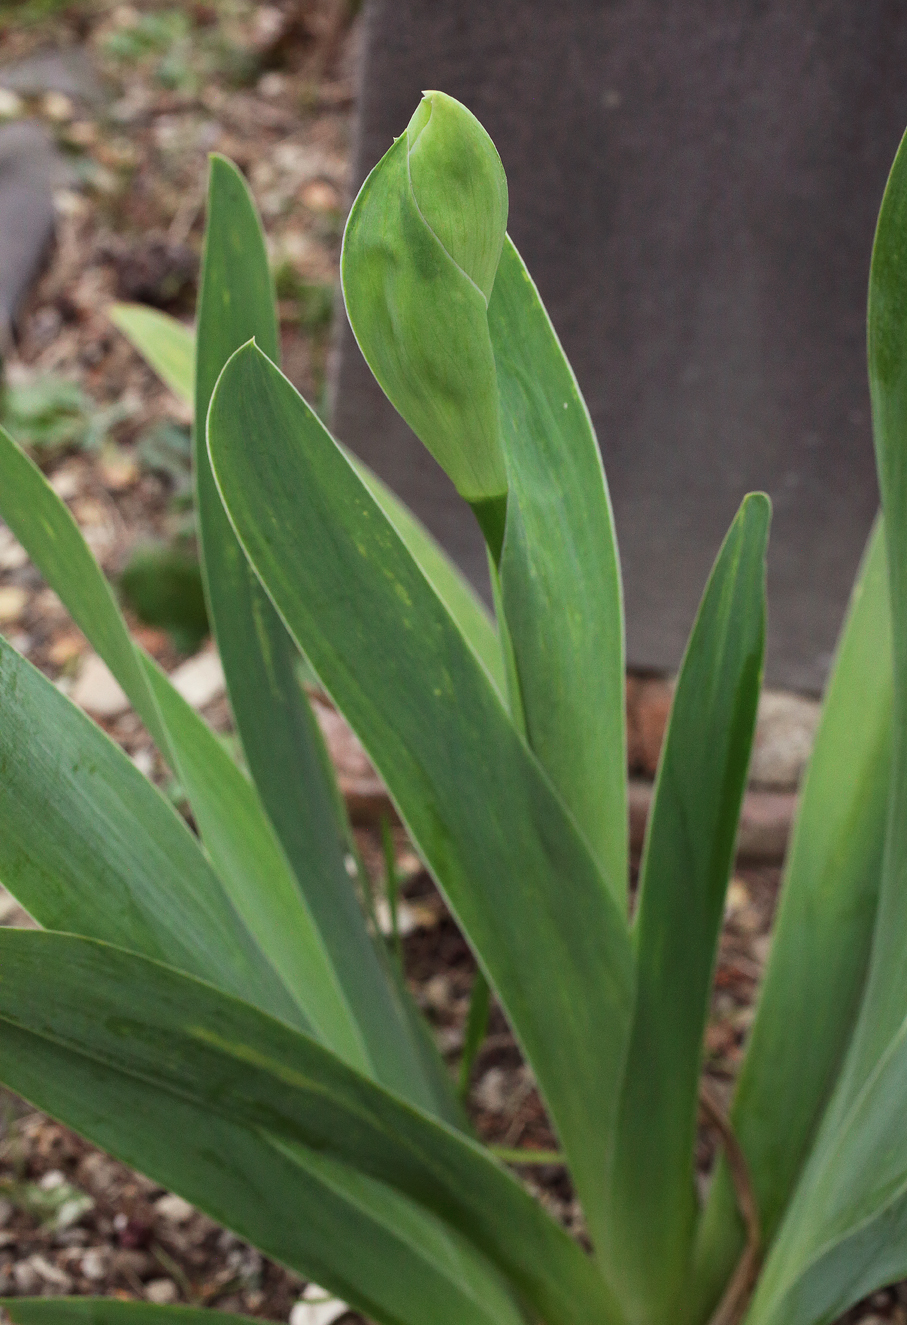 infiorescenza di Iris florentina appena abbozzata, si vede una sorta di boccio verde appiattito in parte protetto dalla brattea sottostante